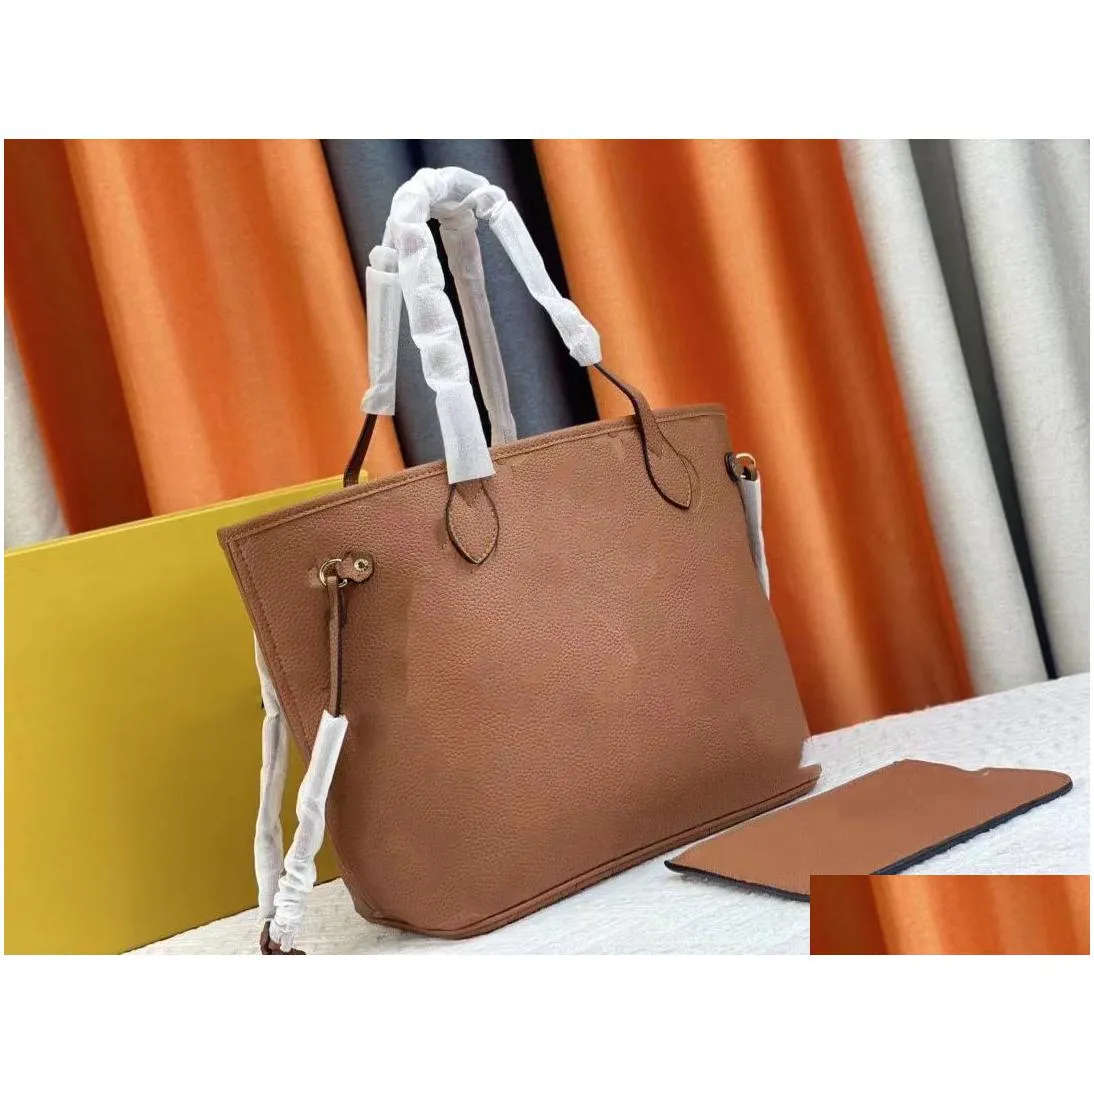 cross body womens handbag shoulder bag large capacity shopping bag two small wallets m45685